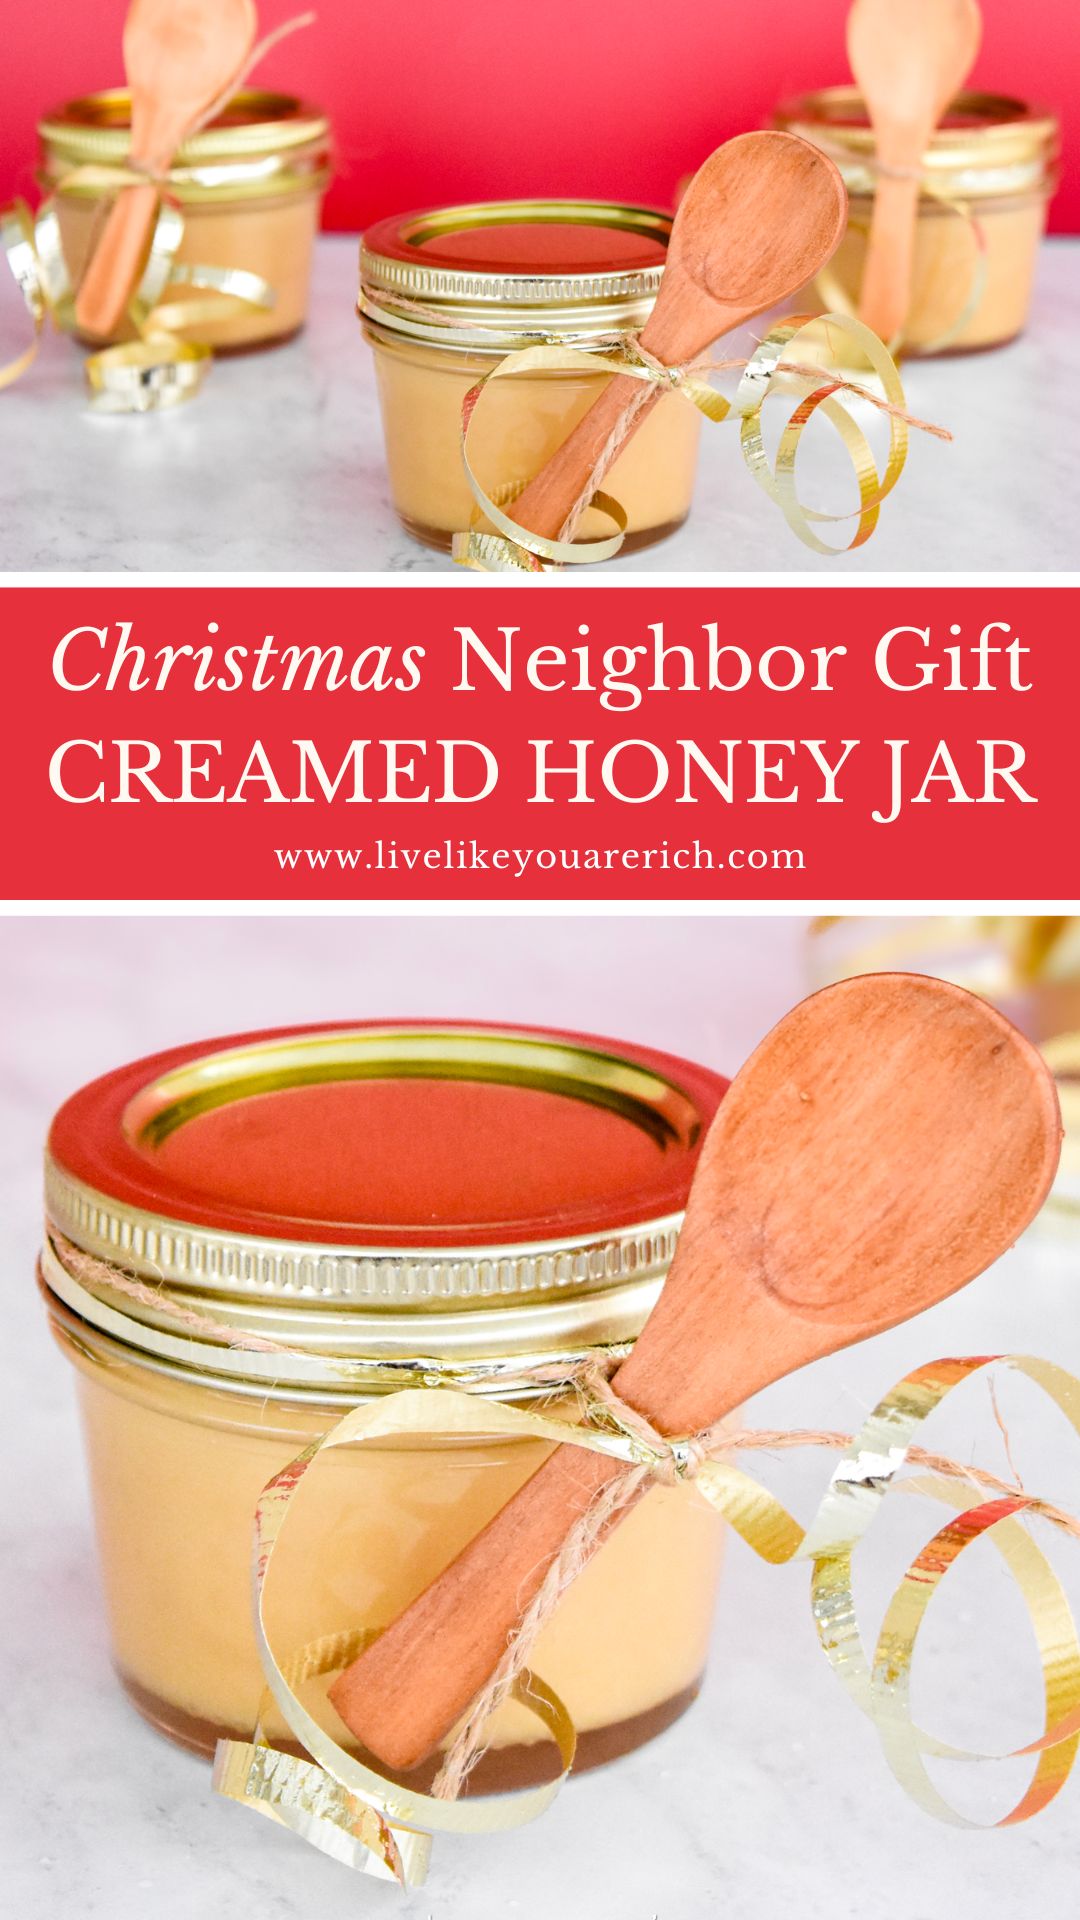 Christmas Neighbor Gift: Creamed Honey